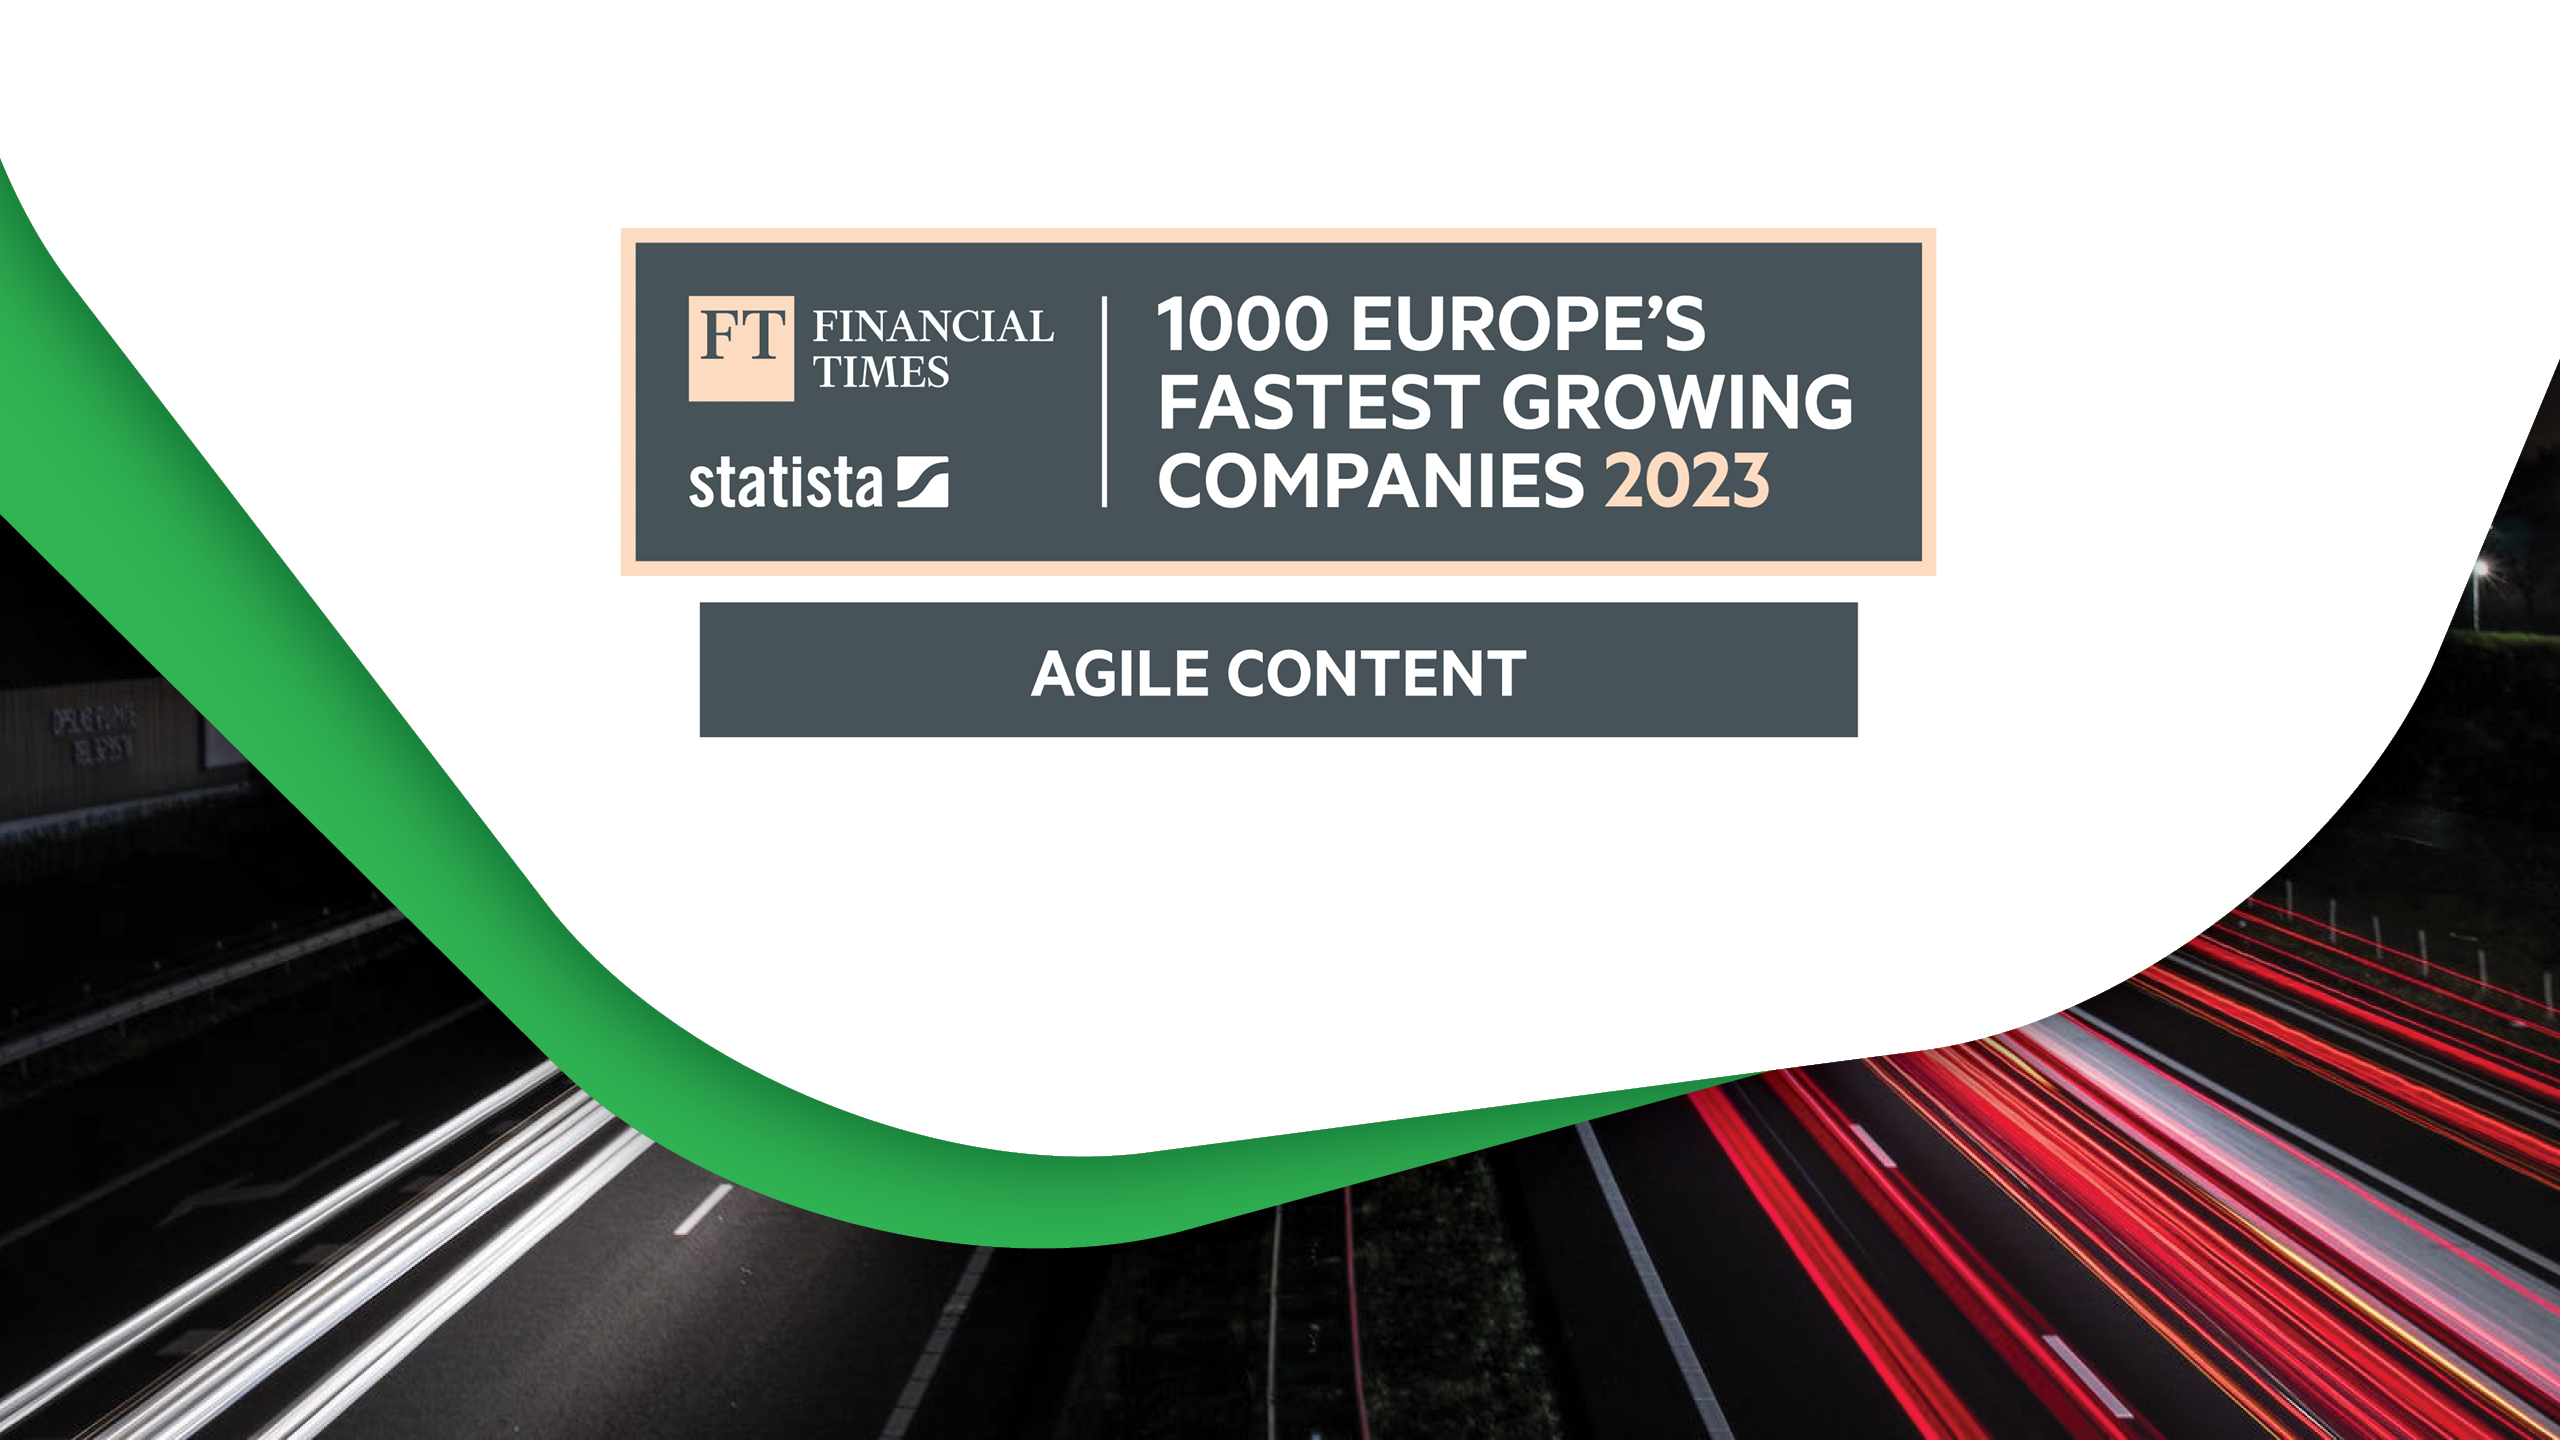 Agile Content se posiciona como la cuarta empresa europea de más crecimiento en el sector de medios y telecomunicaciones  de acuerdo con el ranking del Financial Times